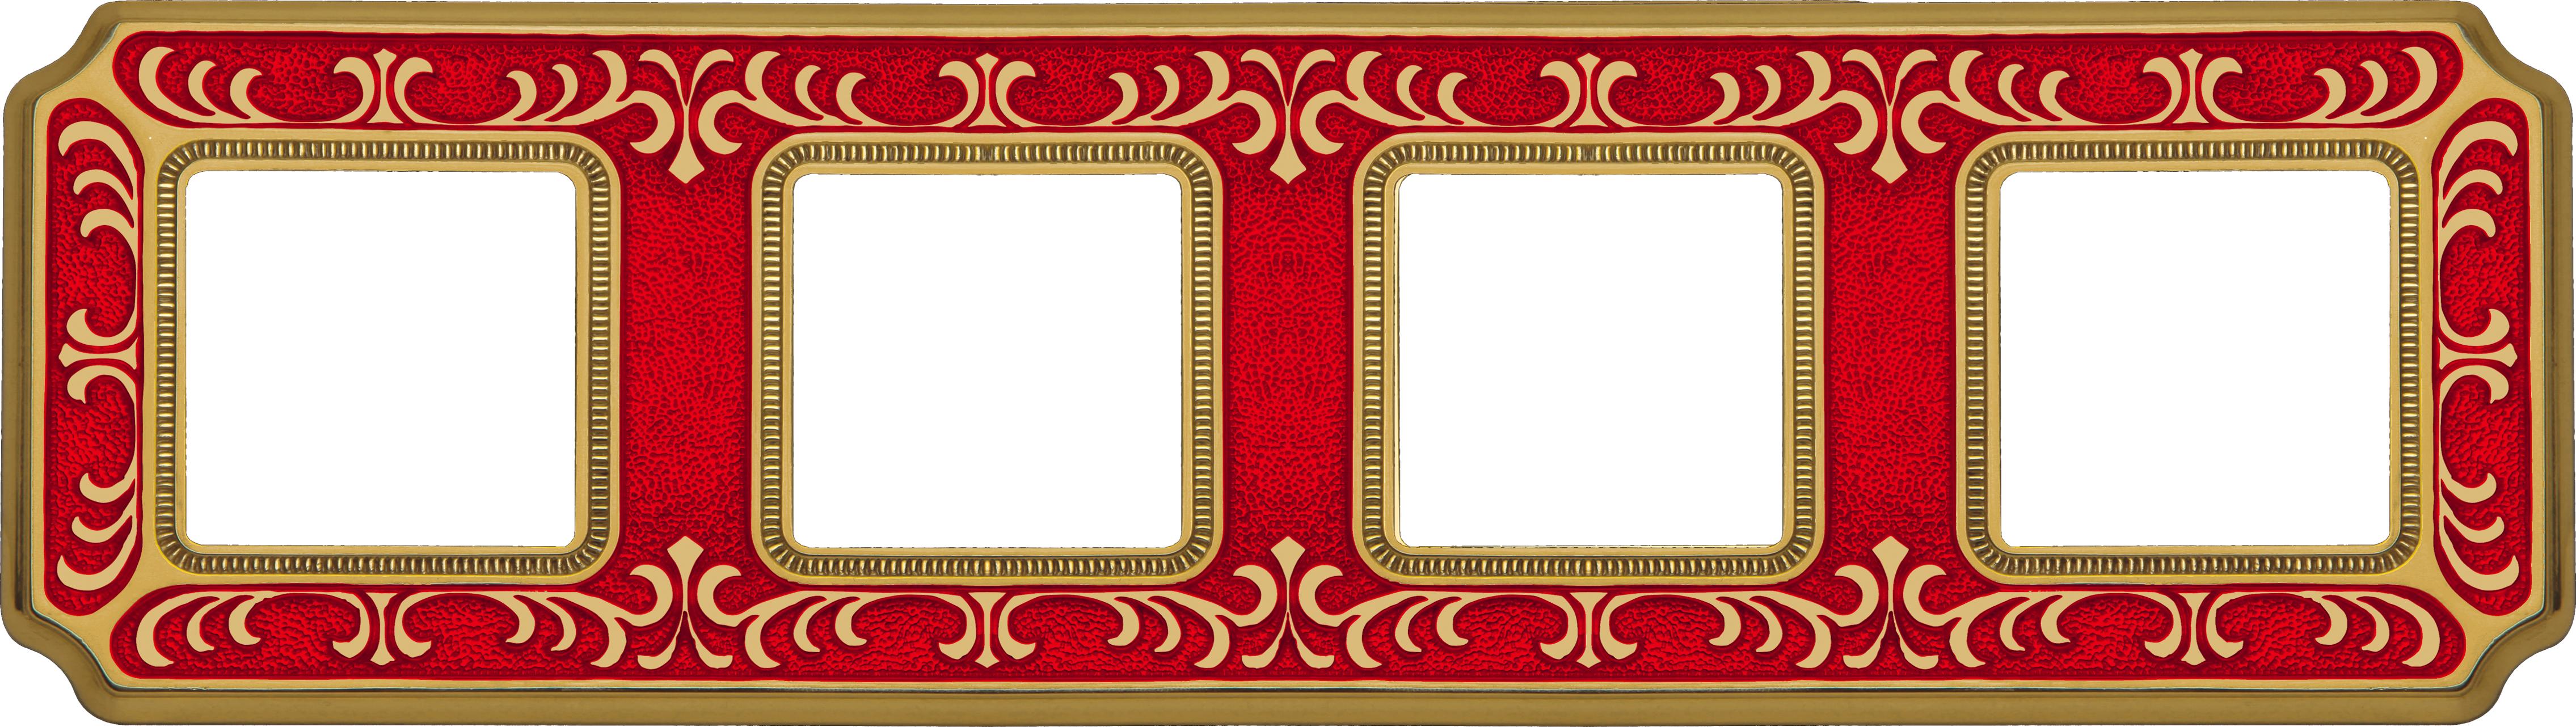 артикул FD01354ROEN название Рамка 4-ая (четверная) , Fede, Серия Siena, Рубиново-красный